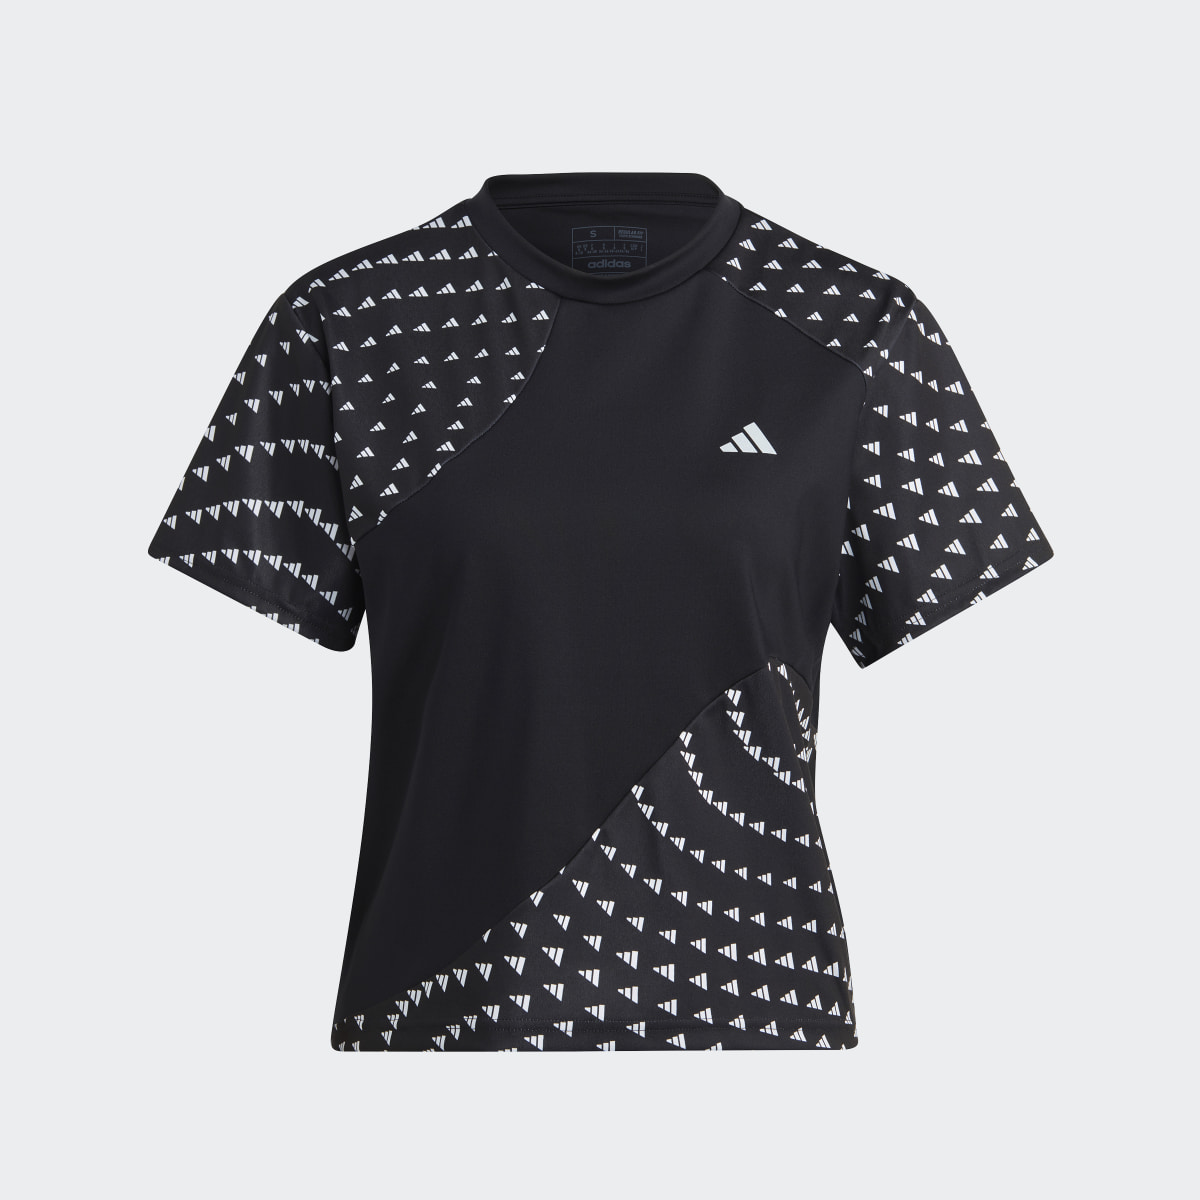 Adidas Run It Brand Love Tişört. 5